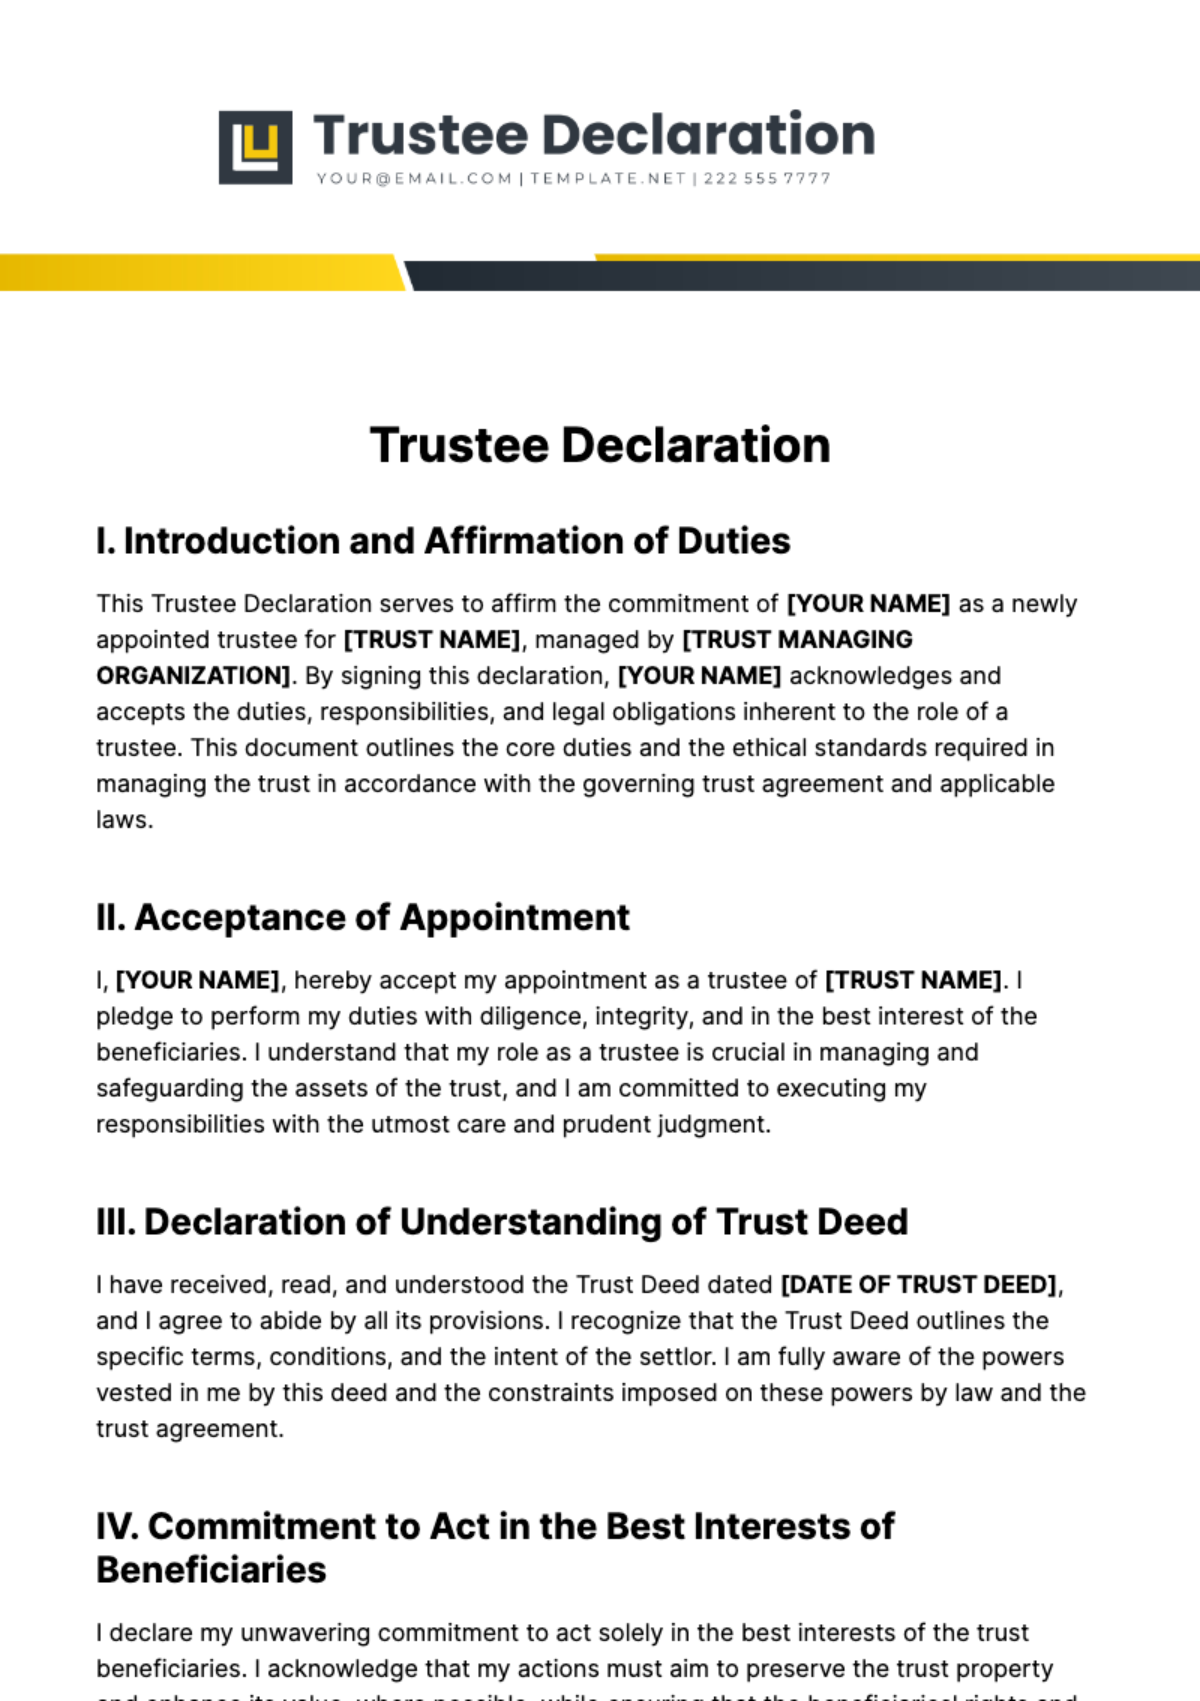 Trustee Declaration Template